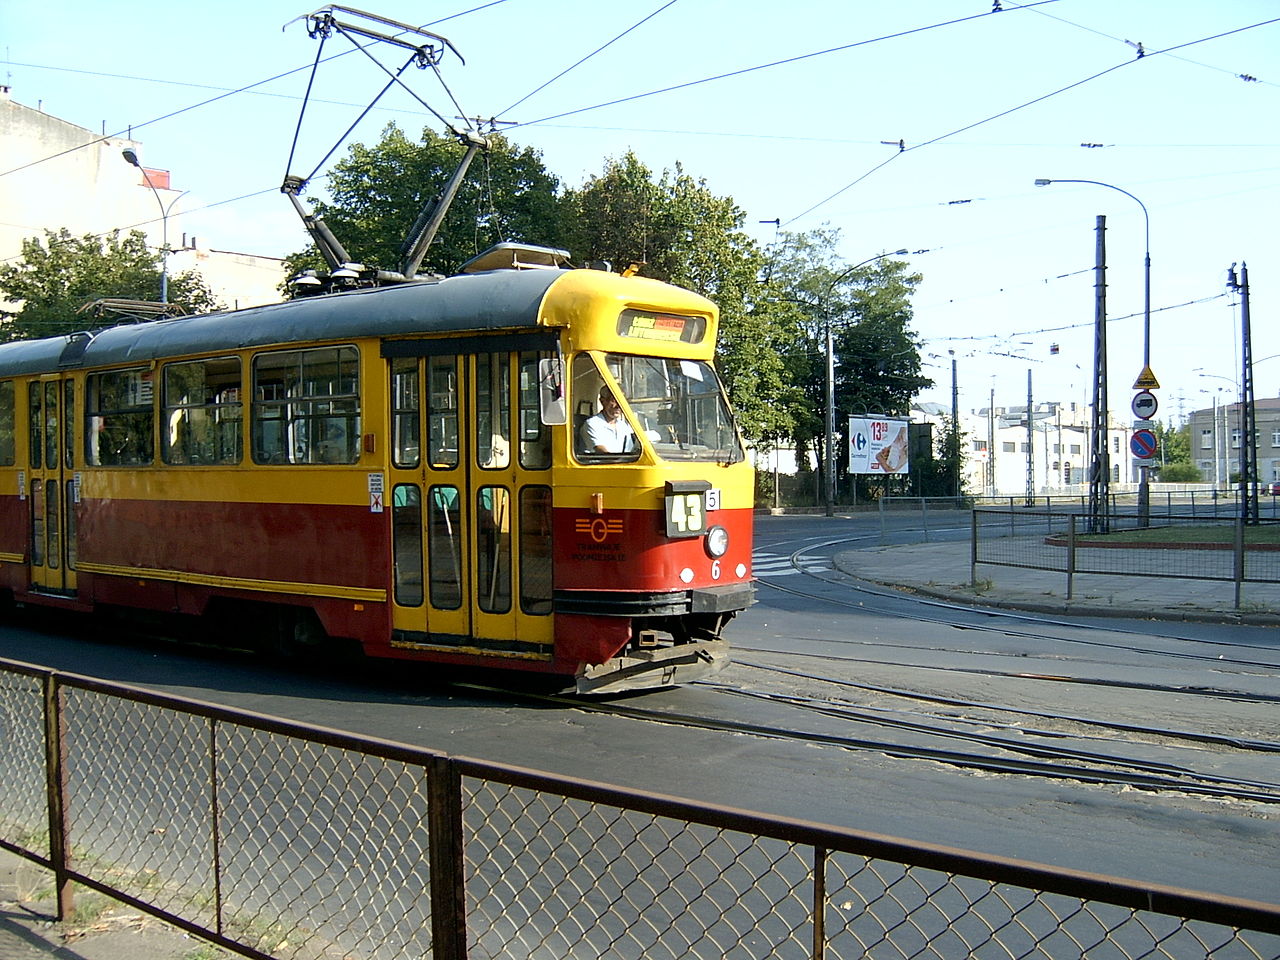 Lodz tram photo